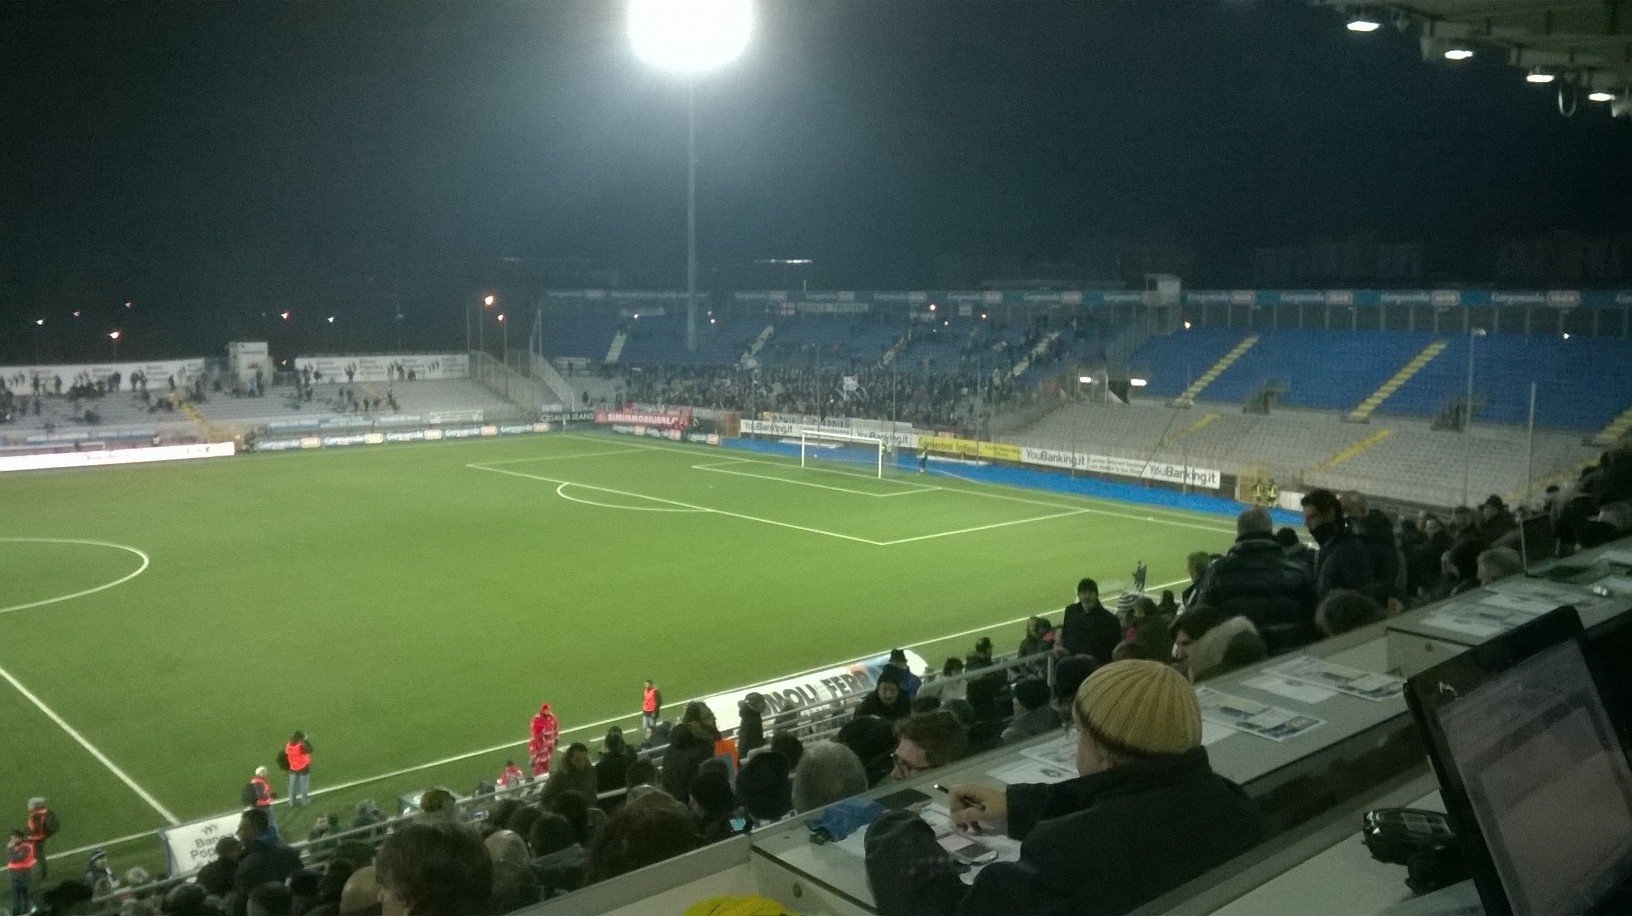 Novara-Alessandria 2-1. Dai i voti ai grigi